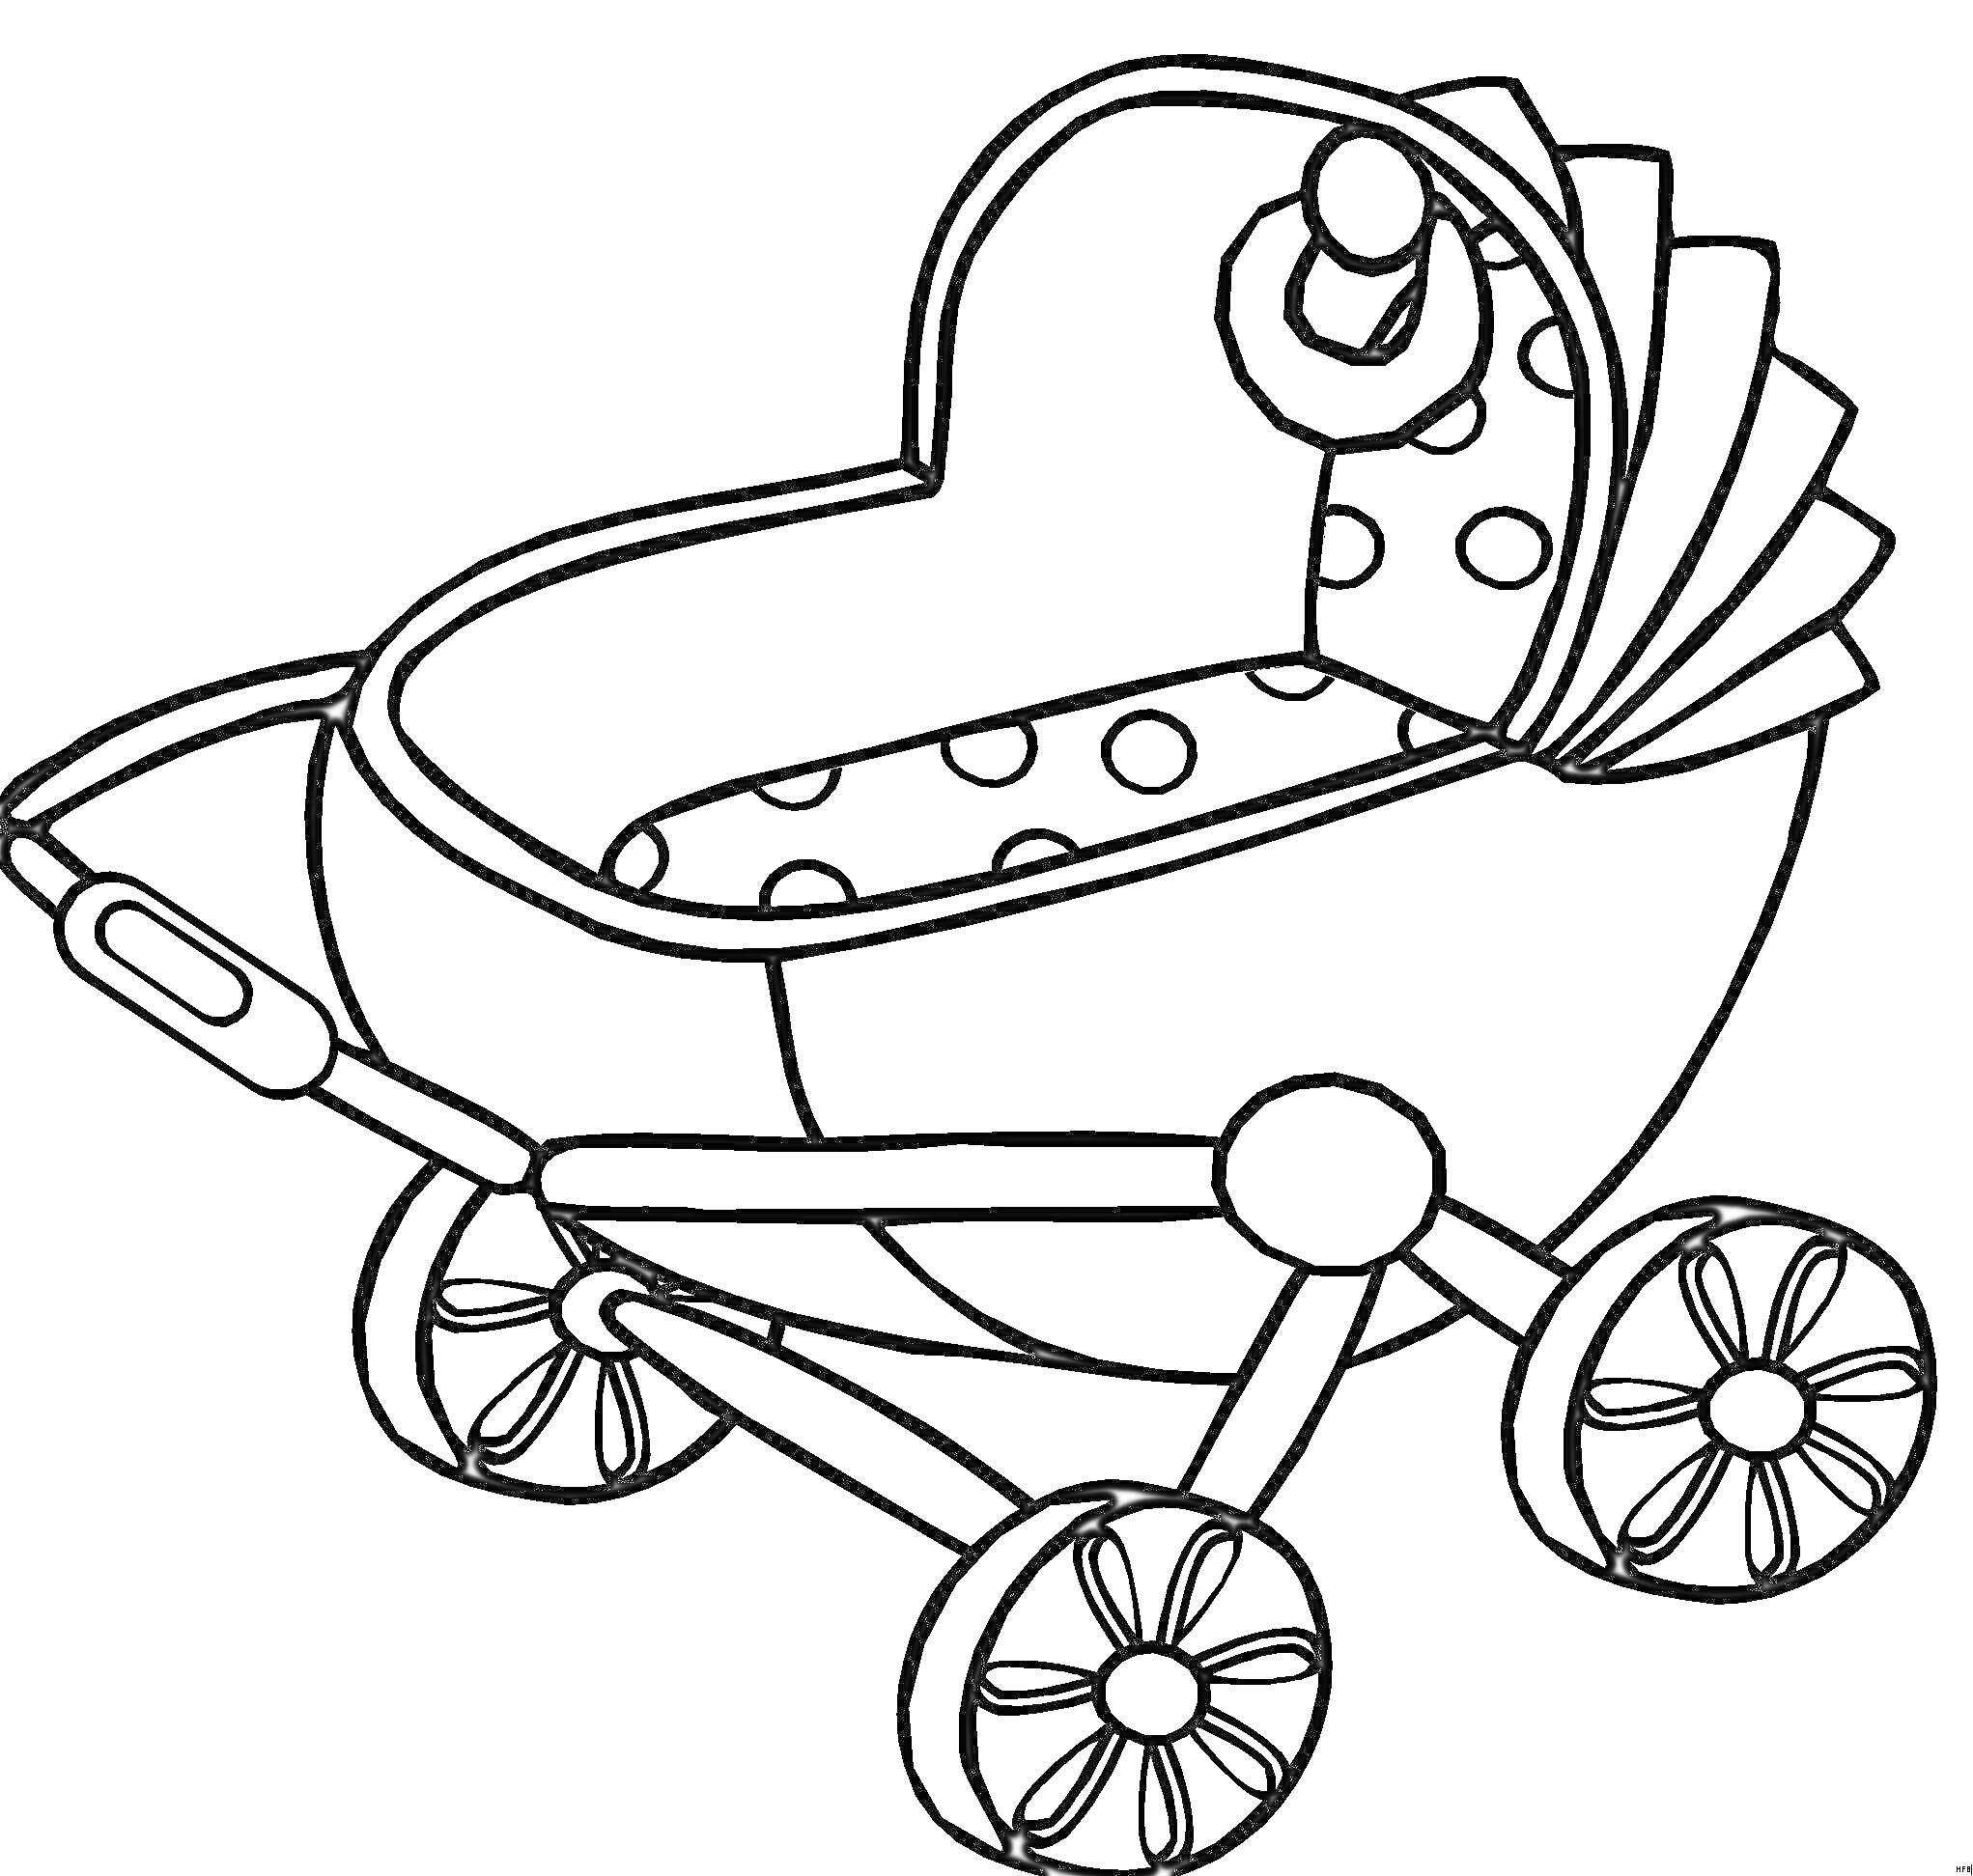 Детская коляска с полусферическим верхом, ручкой, четырьмя колёсами и игрушкой внутри